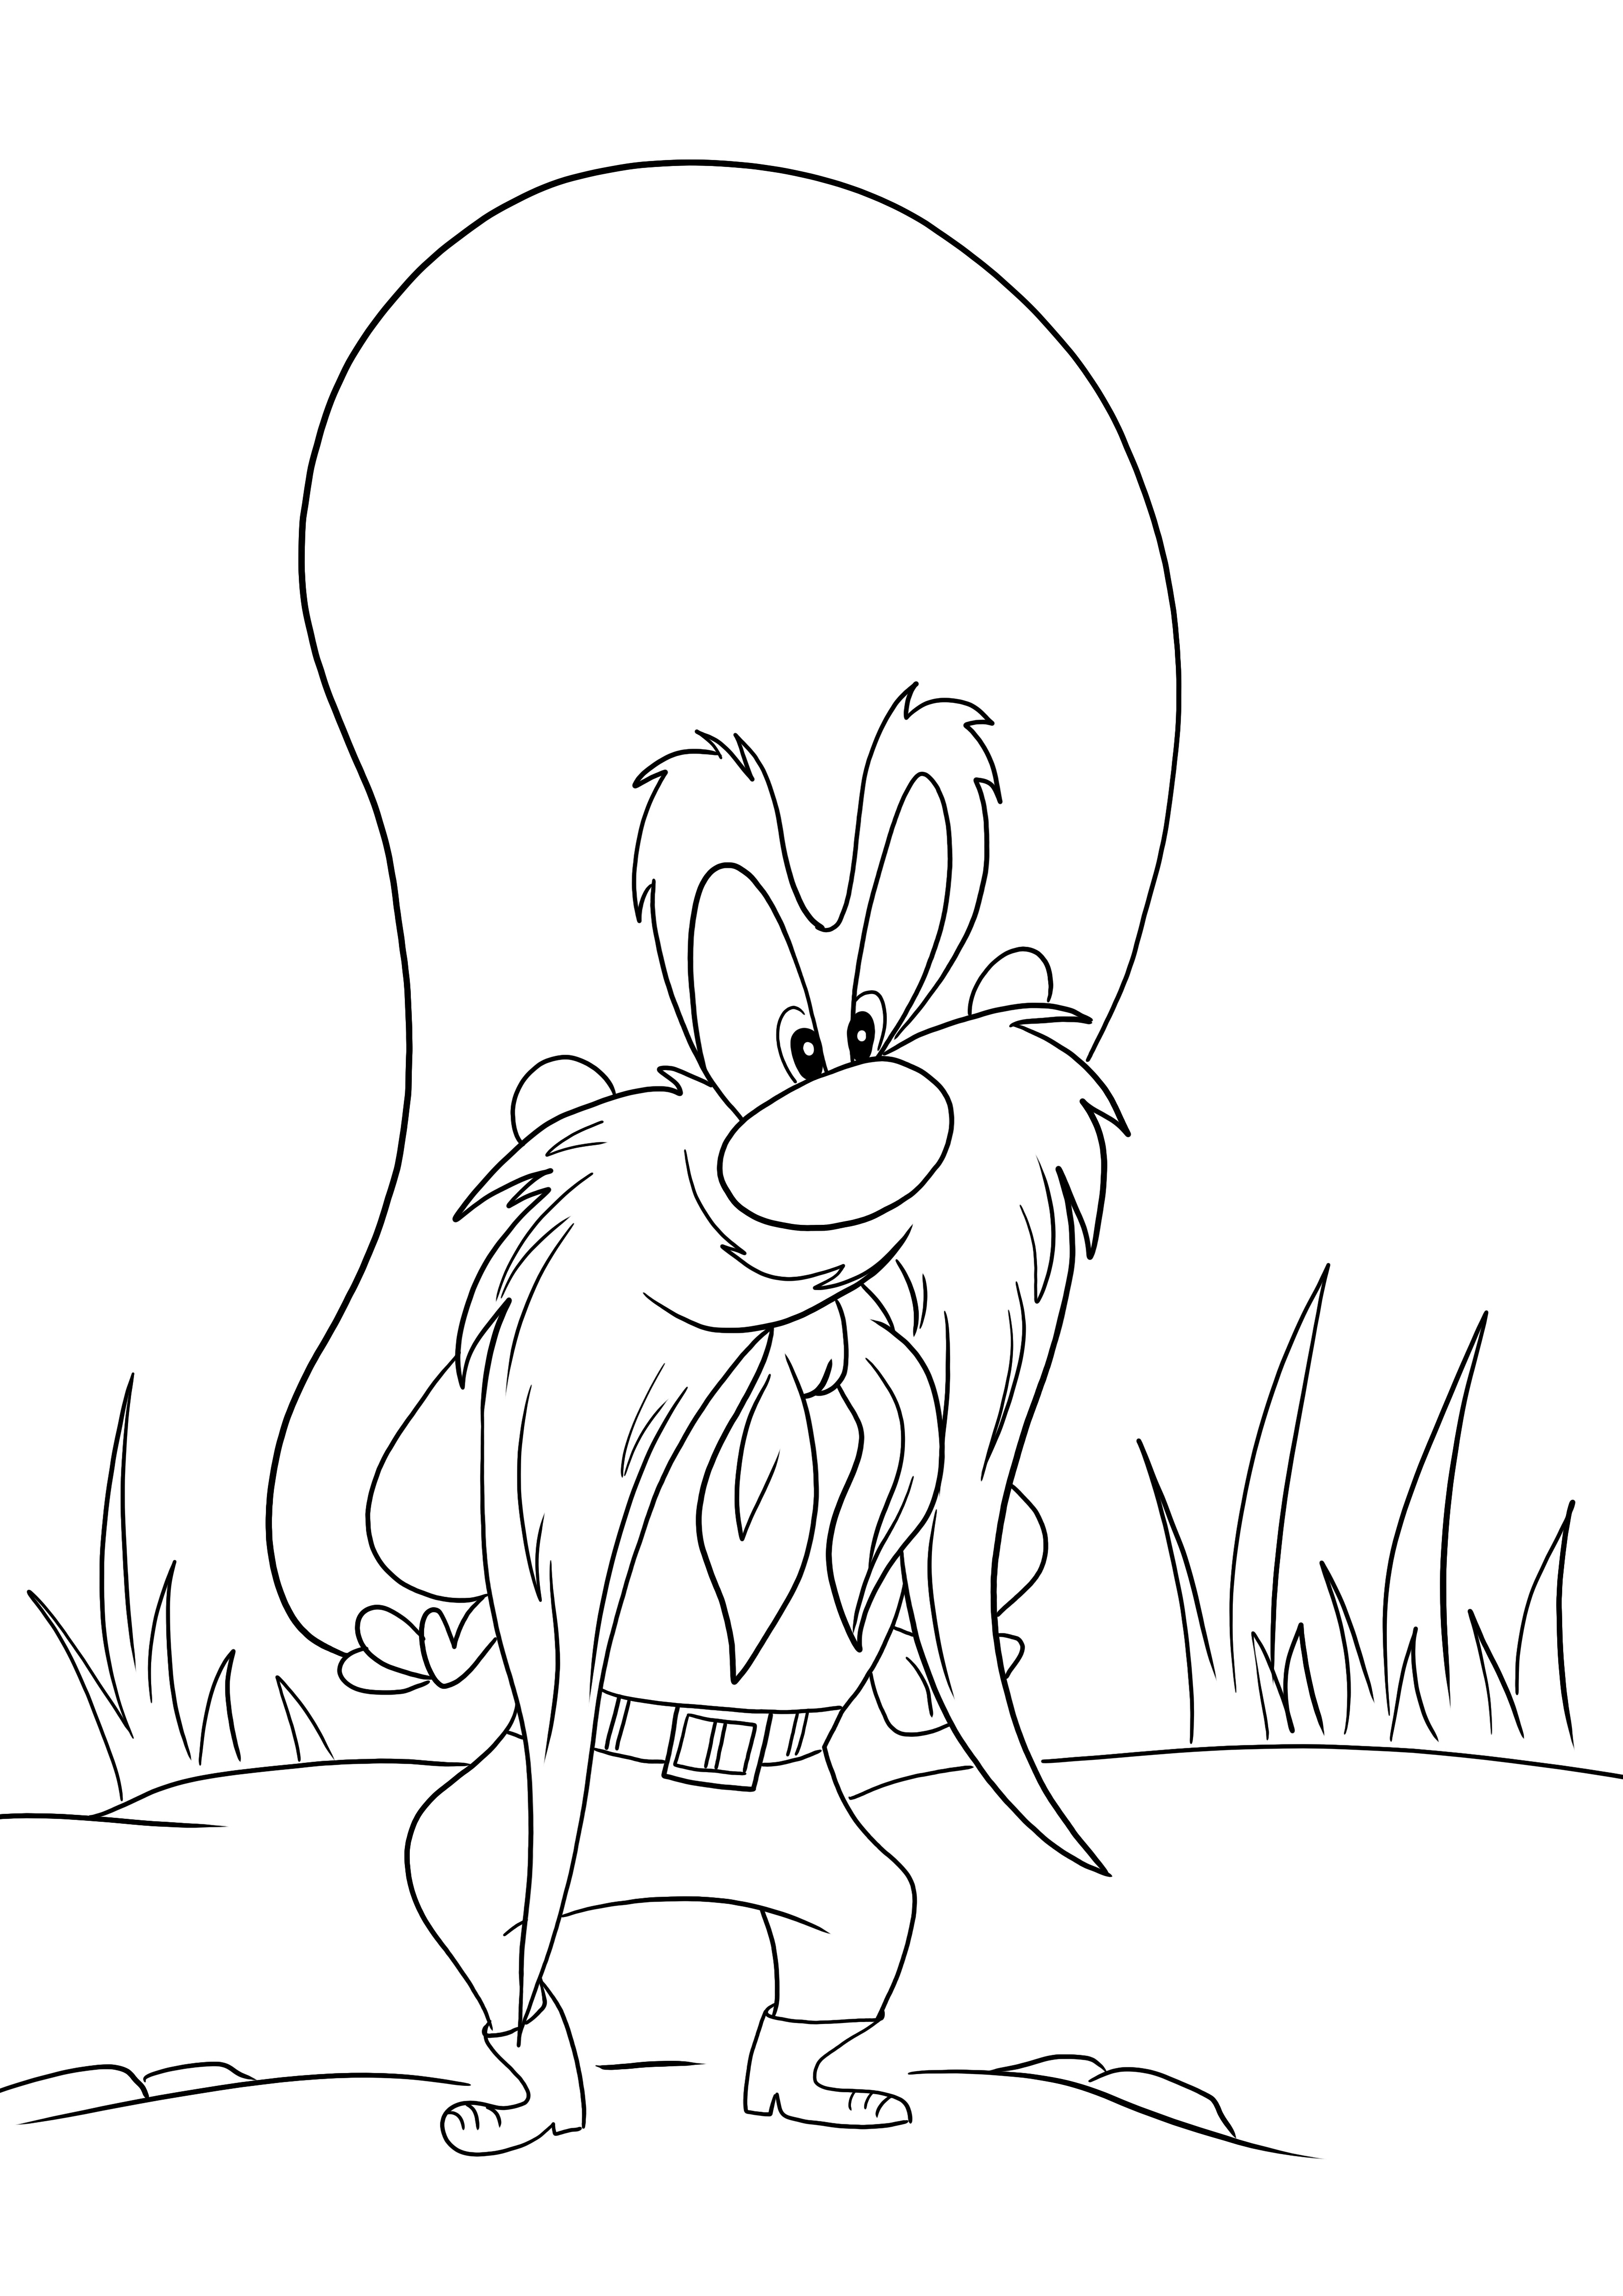 Pewarnaan mudah Yosemite Sam dari Looney Tunes gratis untuk dicetak